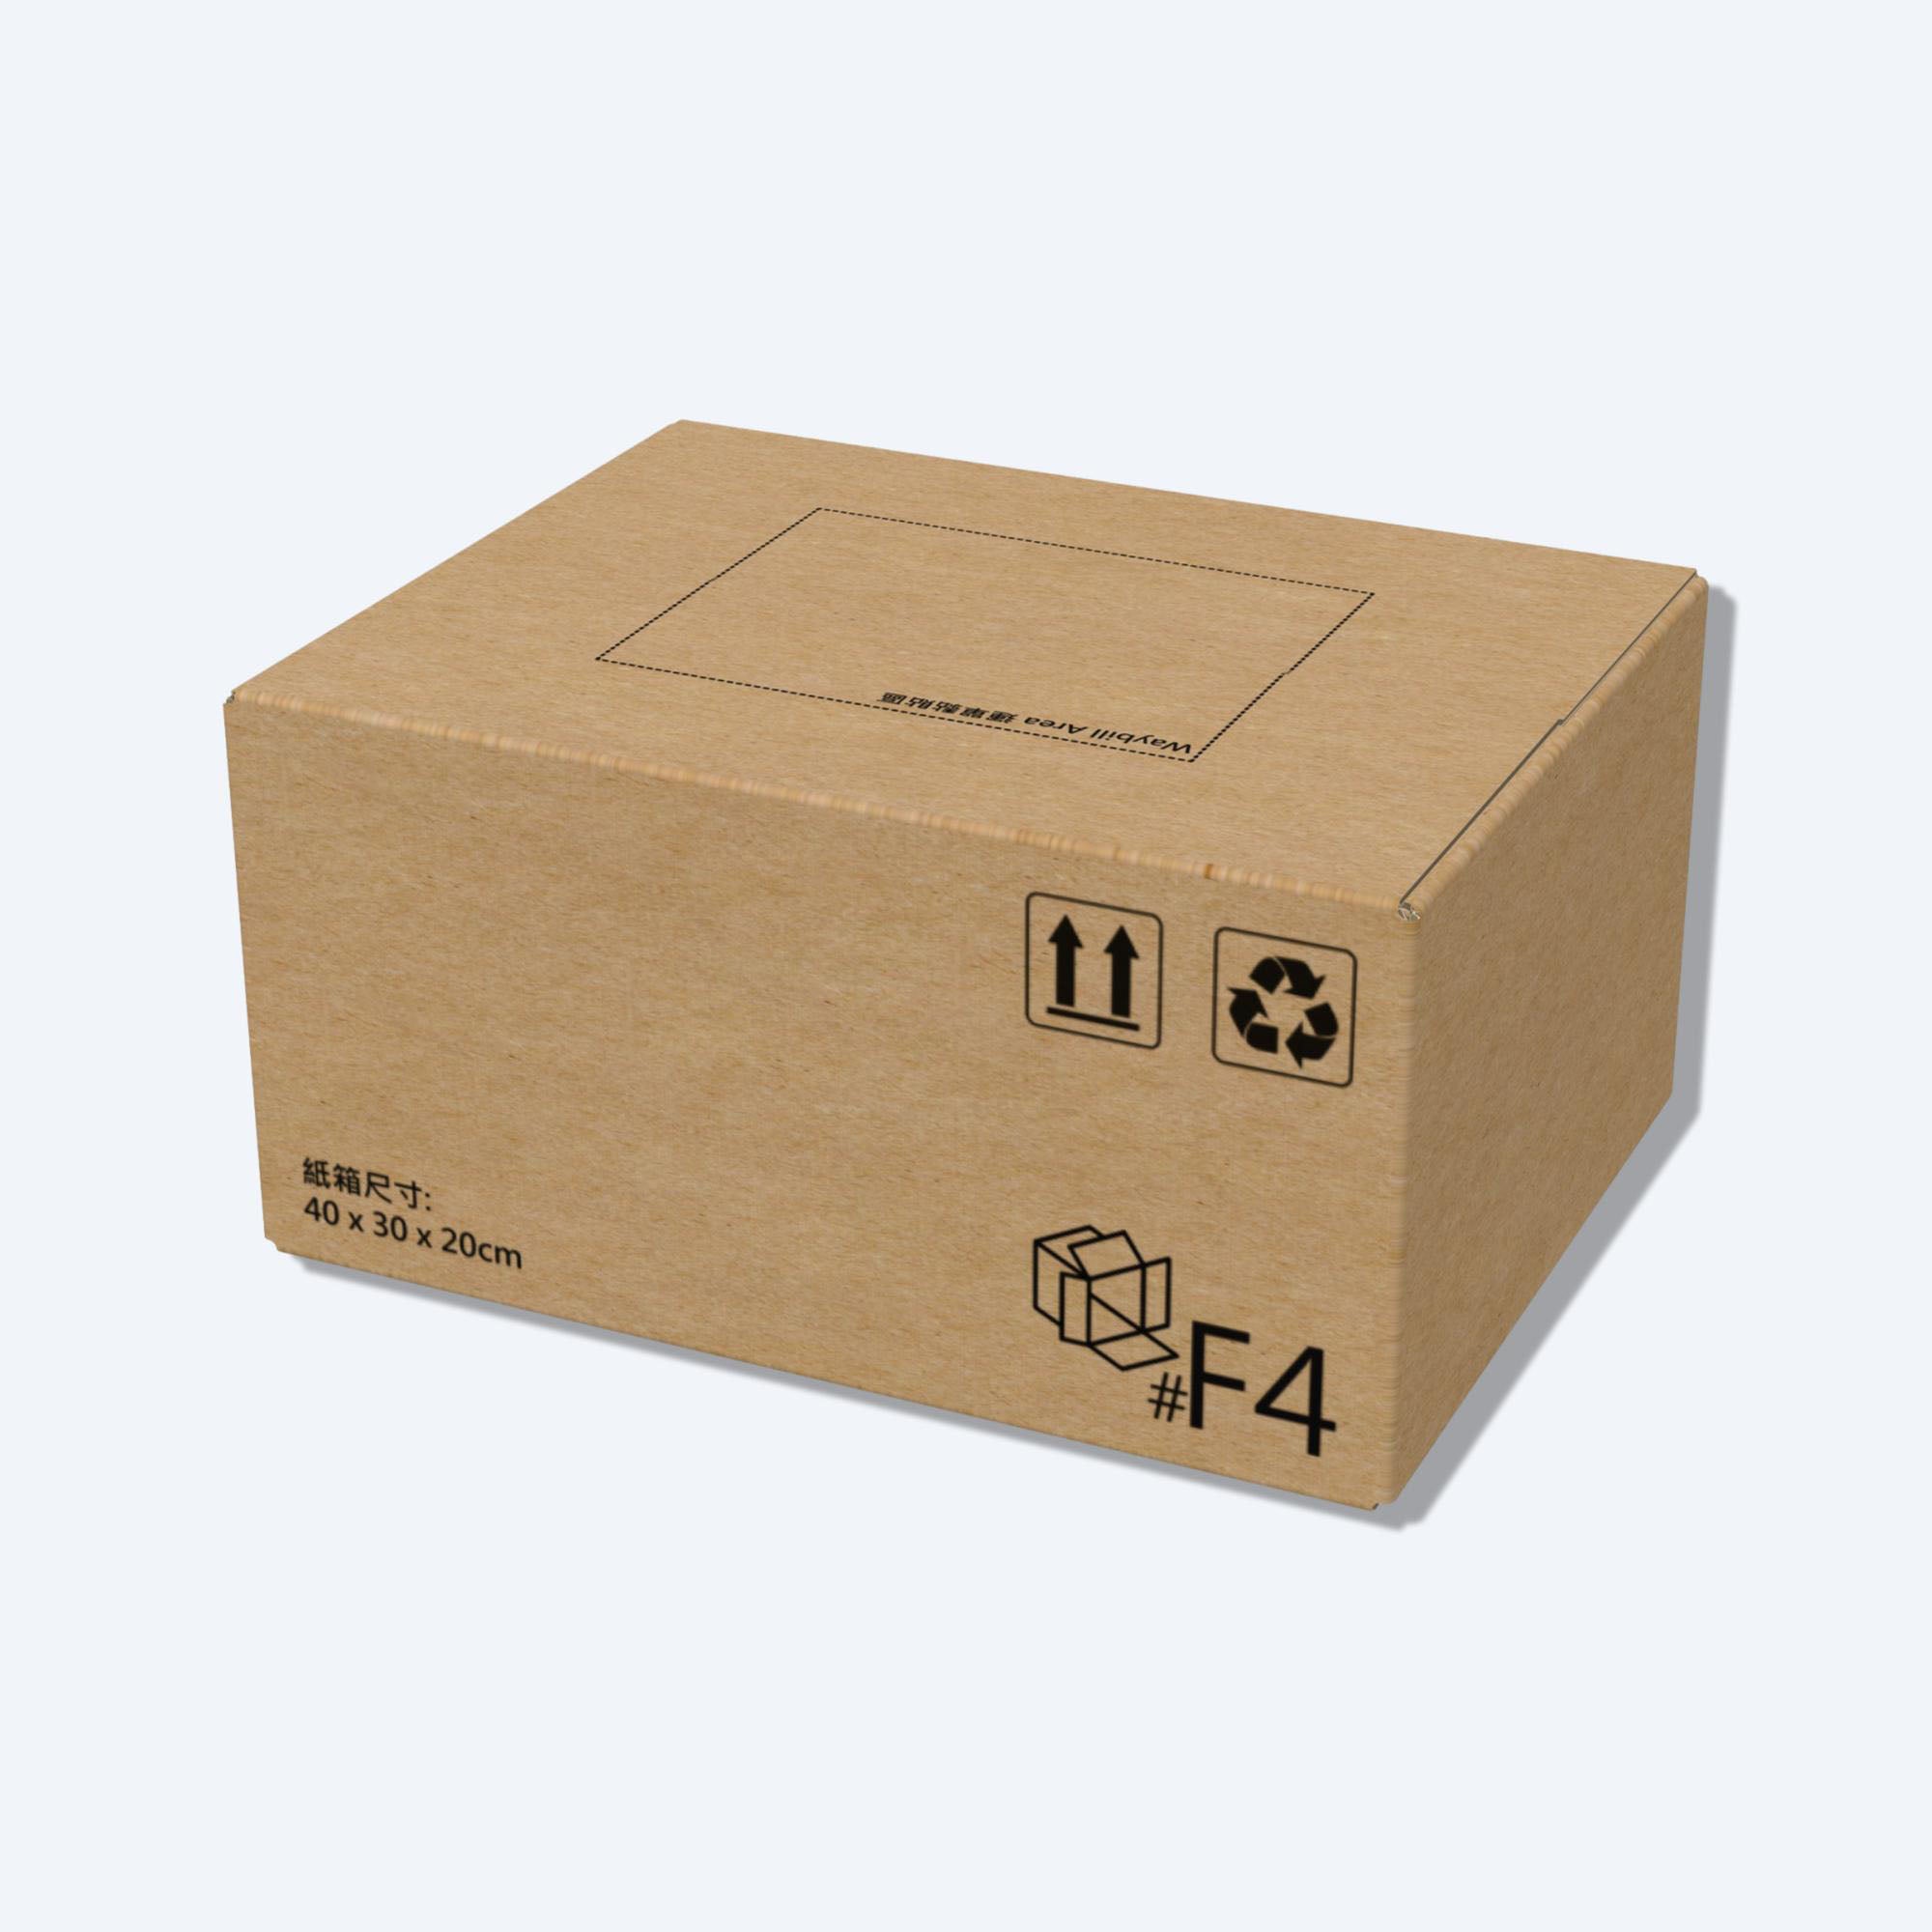 快遞紙箱(順豐紙箱F4尺寸)｜40x30x20cm｜EPACKBOX紙箱批發– Epackbox